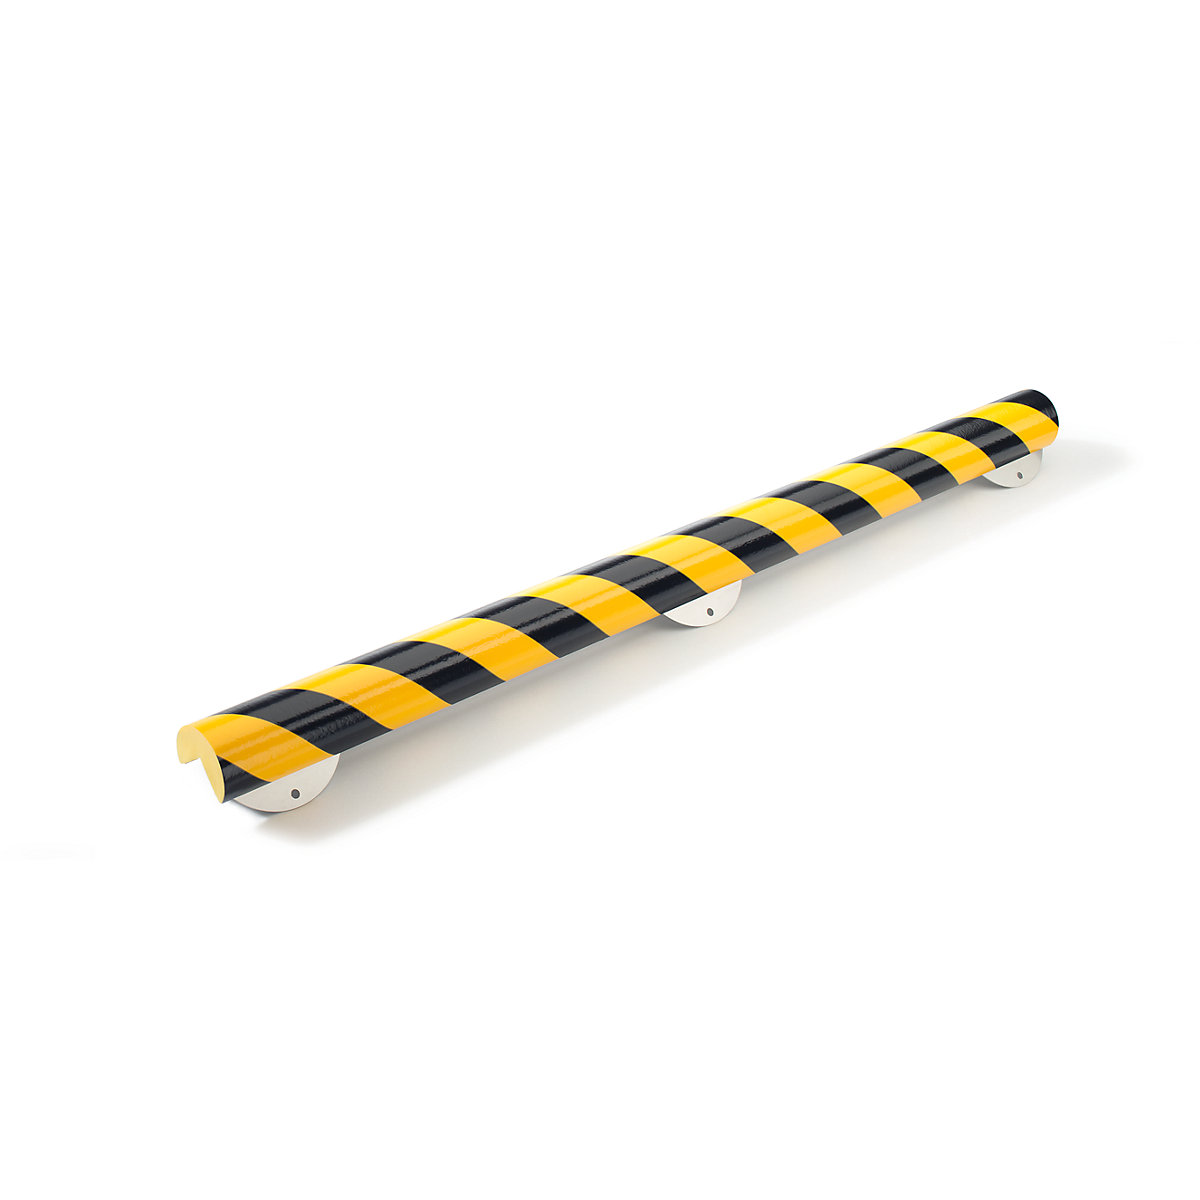 SHG – Protecție pentru colț Knuffi® cu șină de montaj, tip A+, bucată de 500 mm, negru / galben